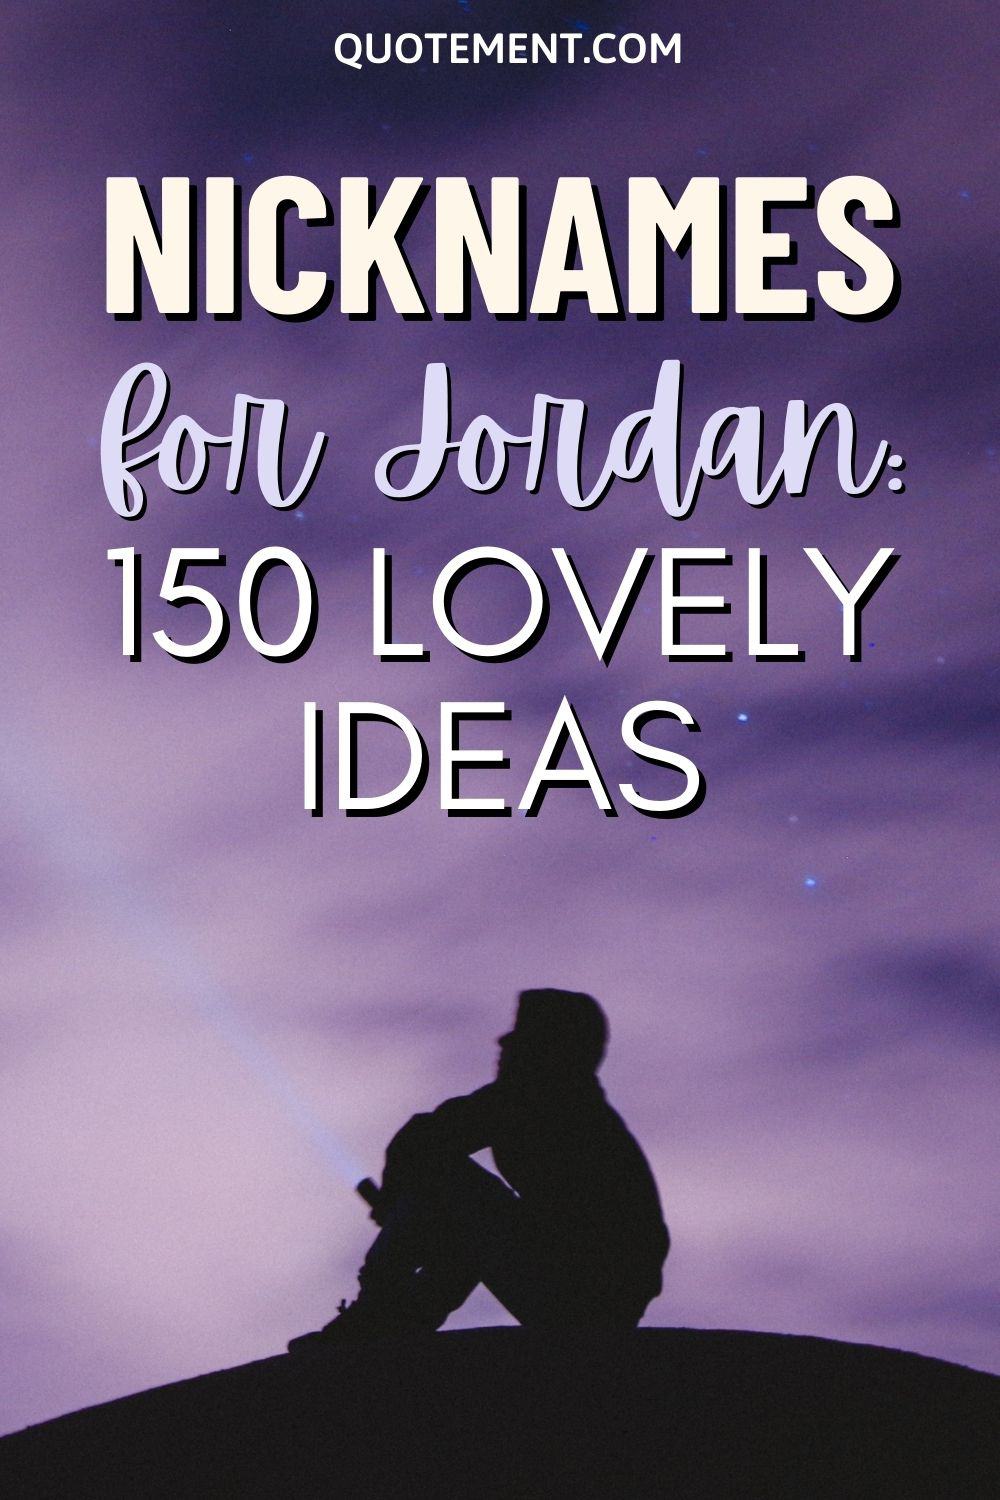 Nicknames For Jordan 150 Lovely Nicknames You’ll Love 